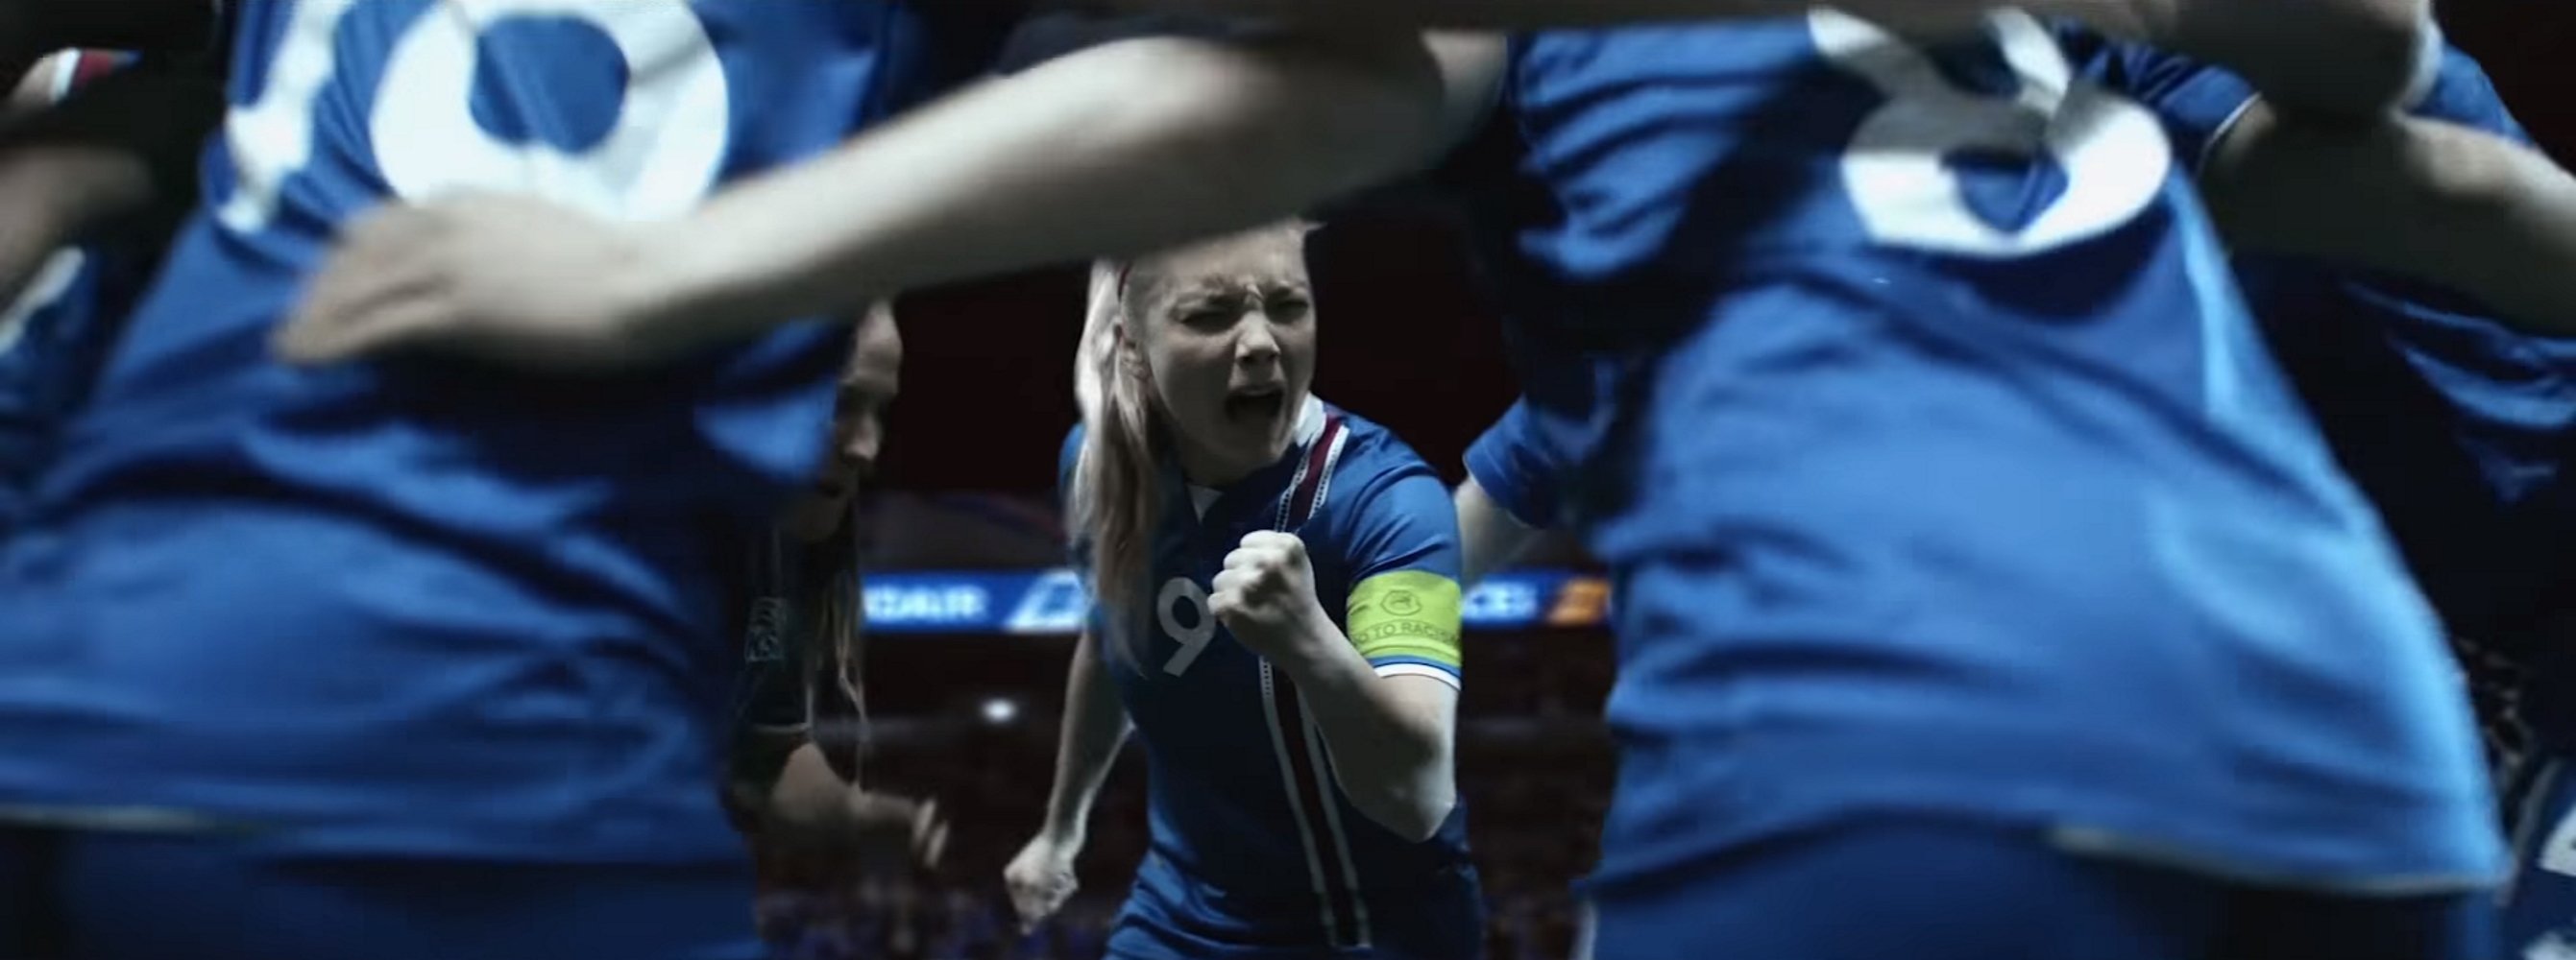 La selecció islandesa femenina 'esclata' contra el masclisme al futbol